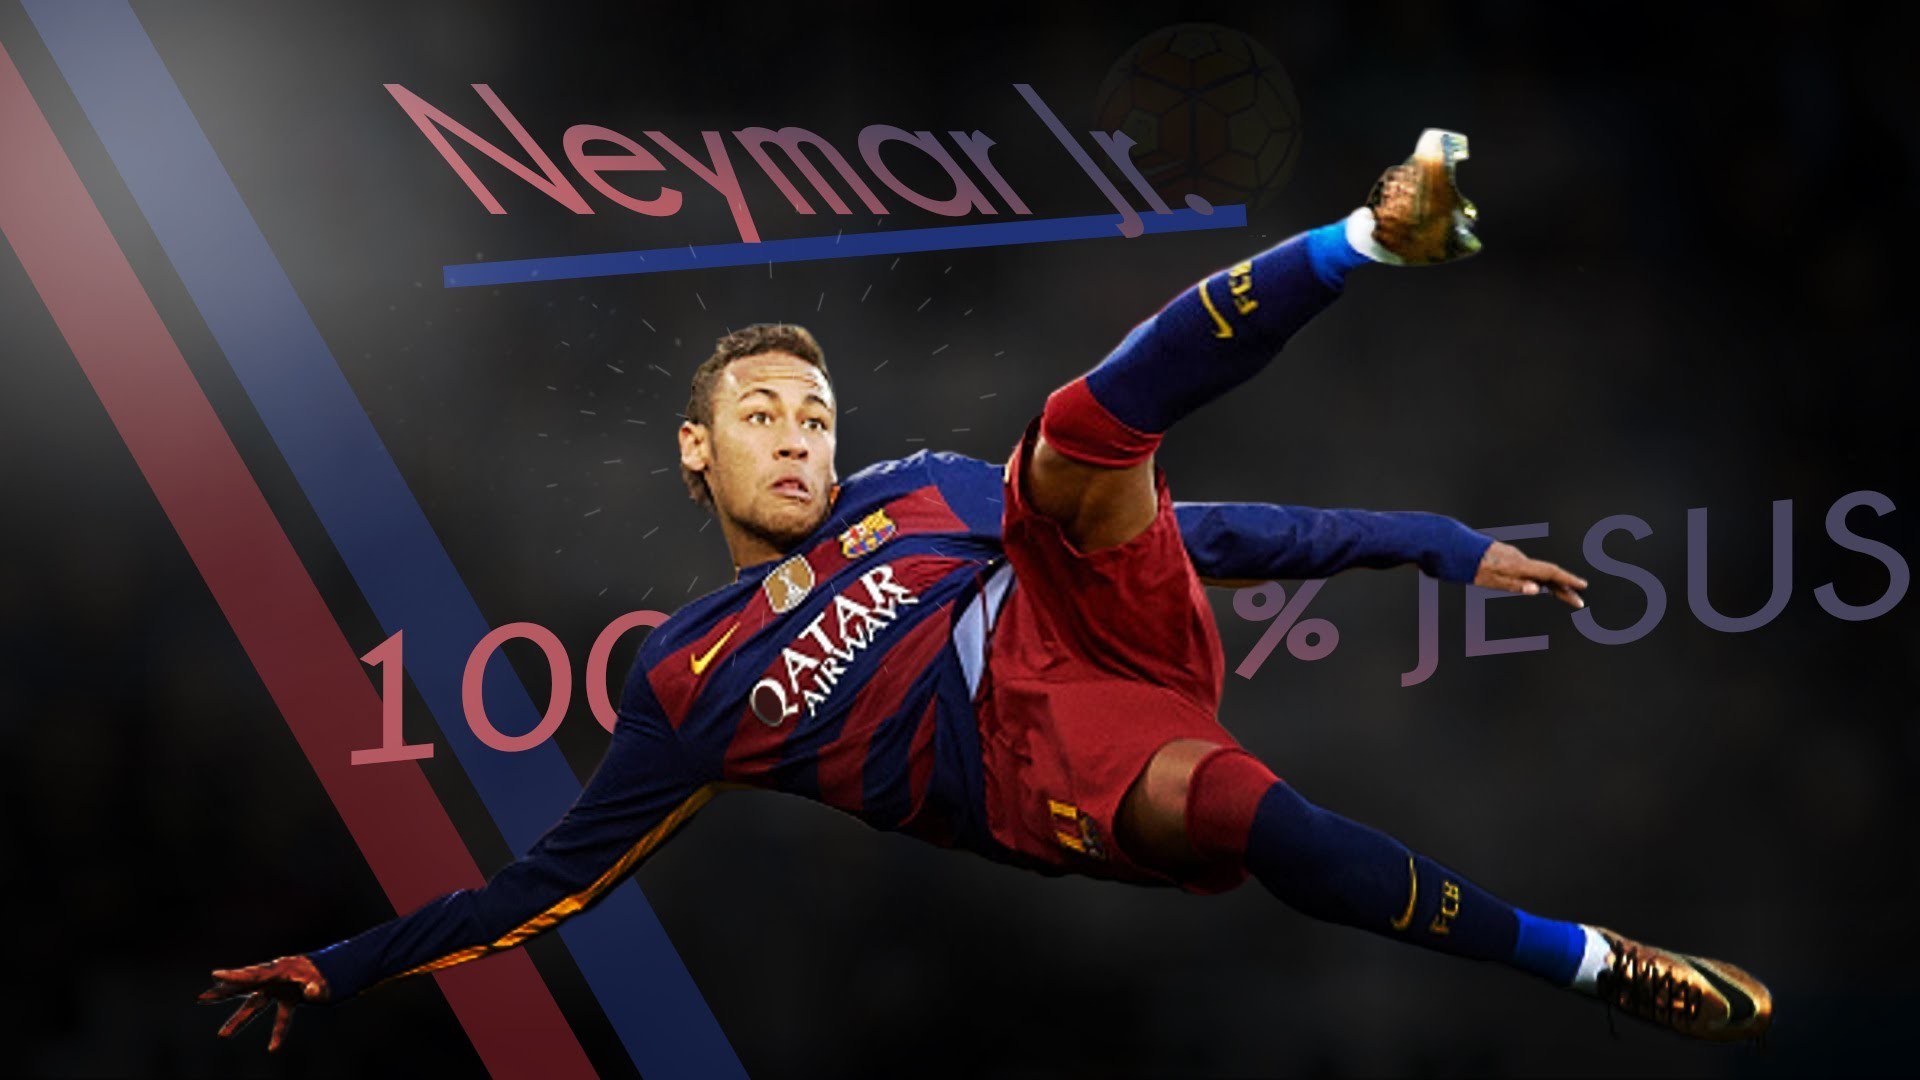 neymar jr wallpaper 2017,football player,player,sports,sports equipment,jersey